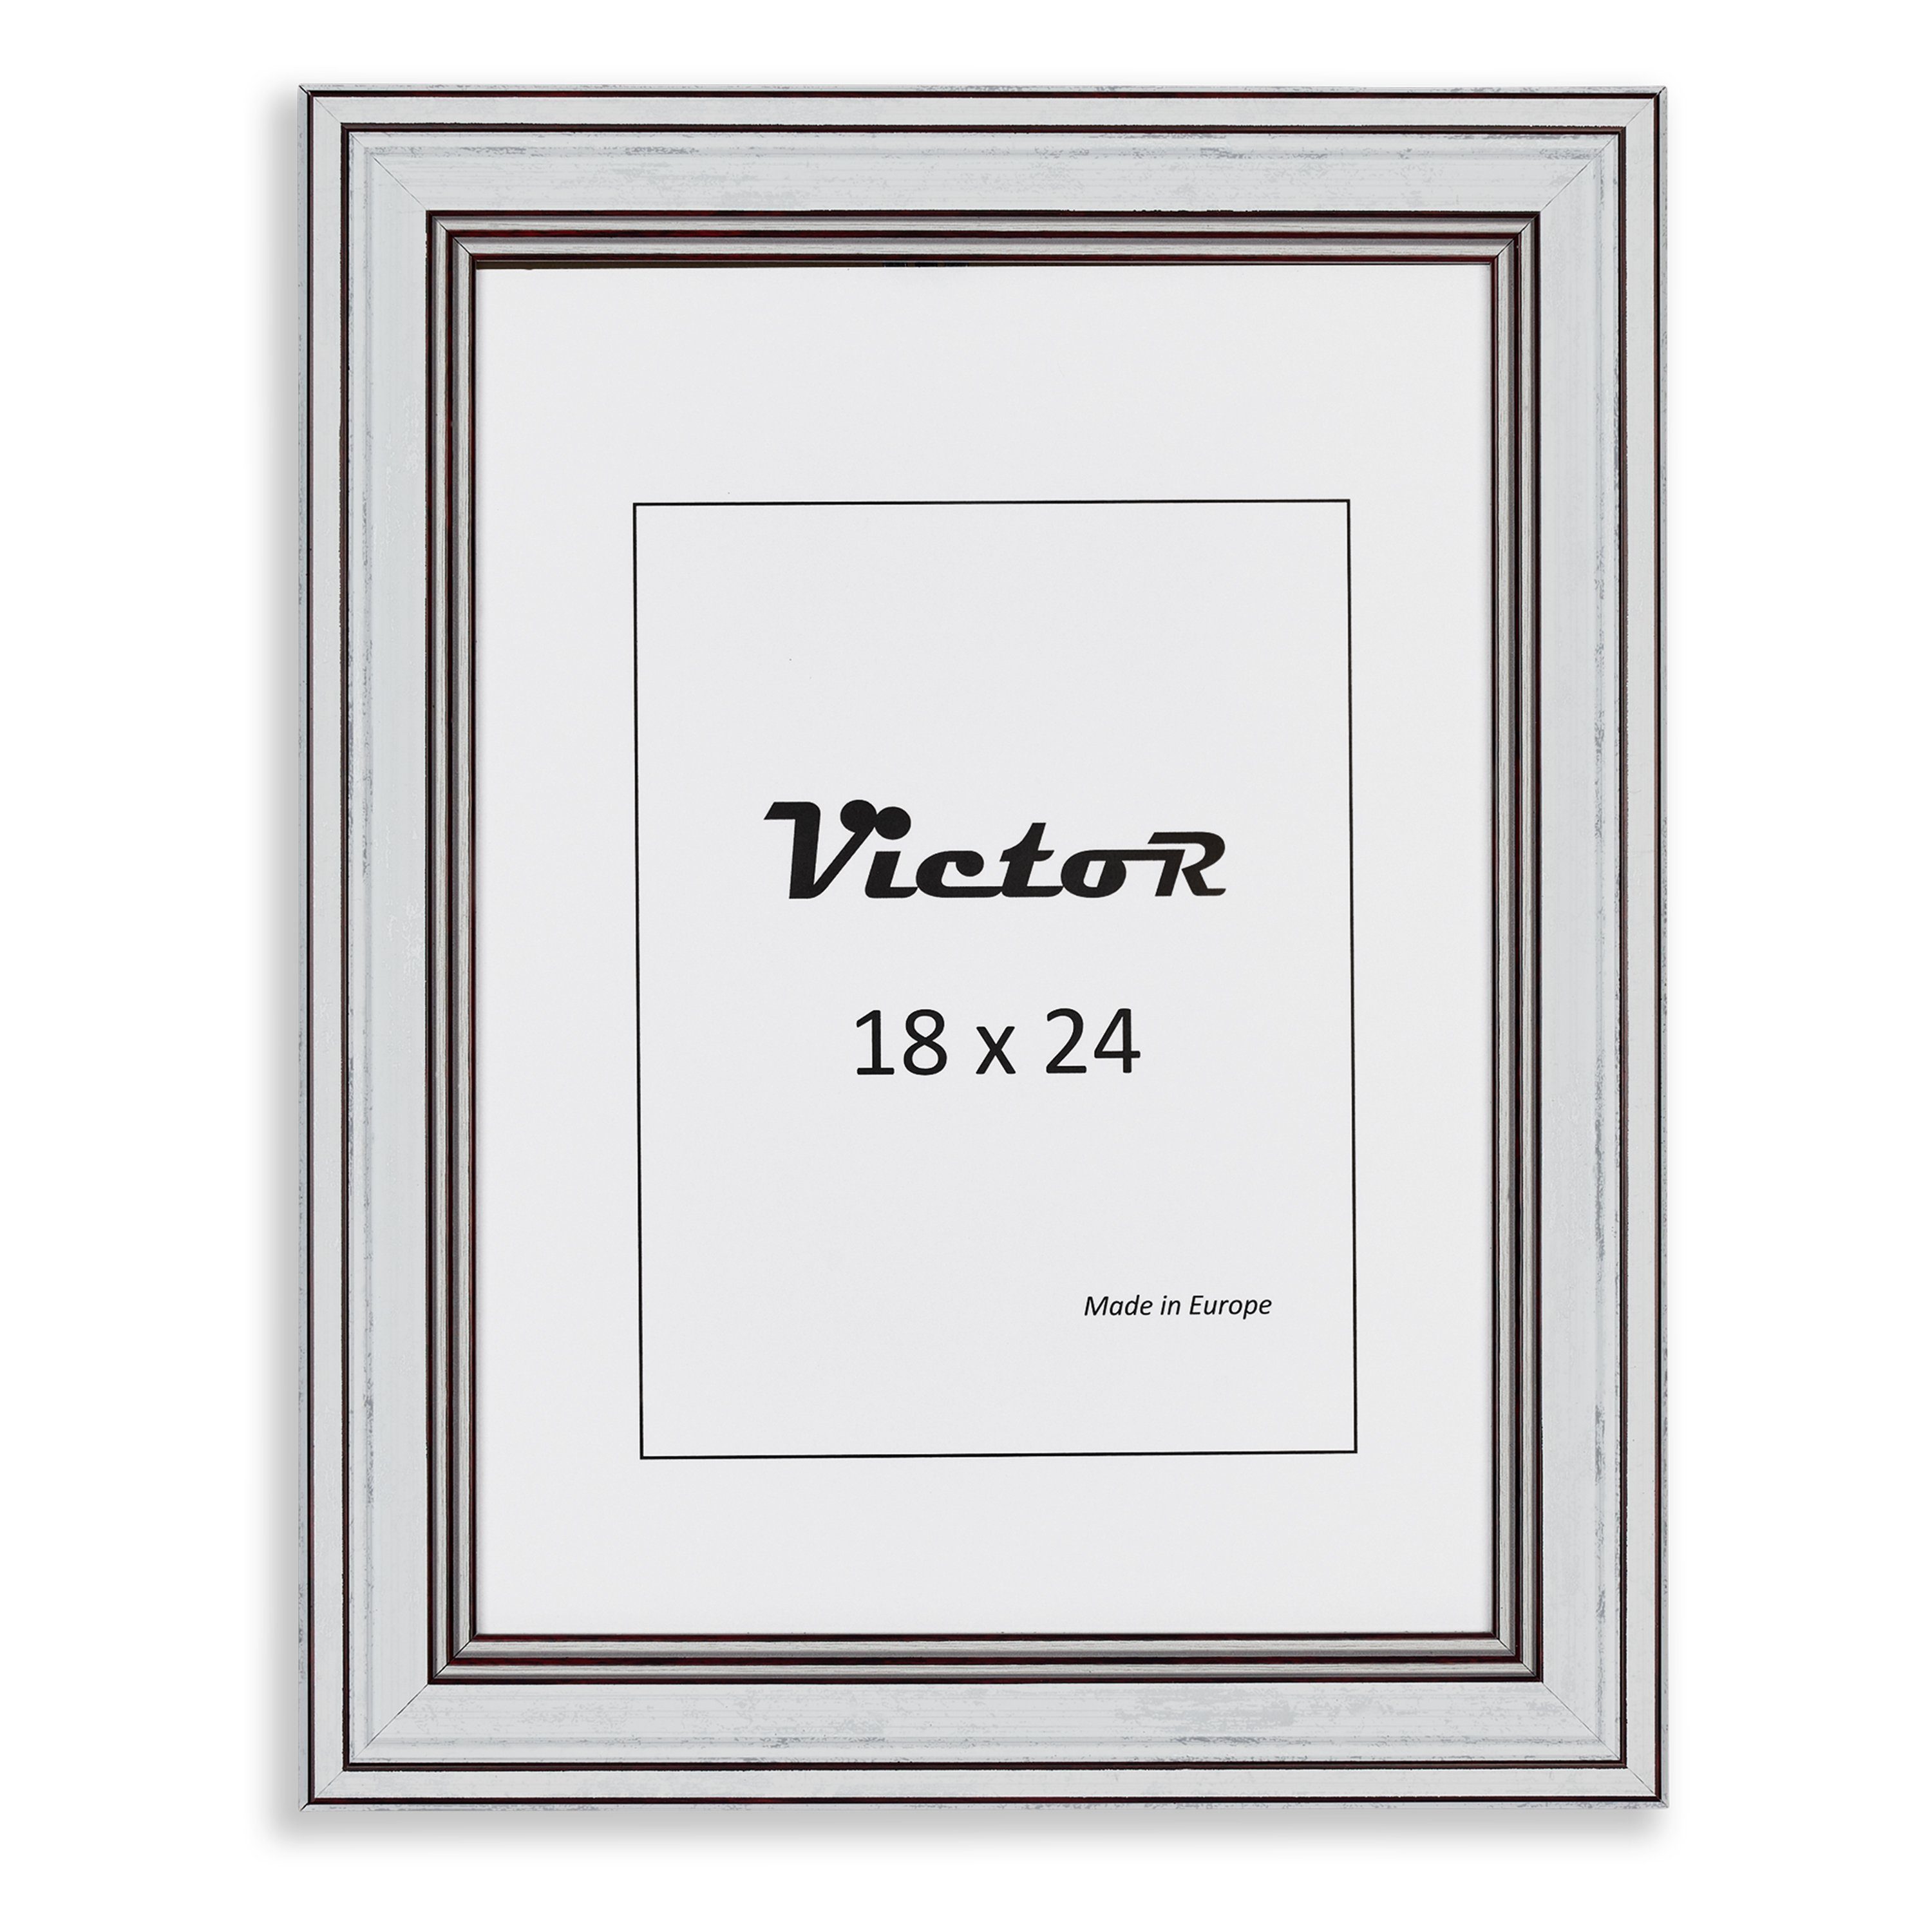 (Zenith) Leiste: Goya, Kunststoff Victor 18x24 Rahmen cm, 3er in weiß, Bilderrahmen 19x31mm, Set